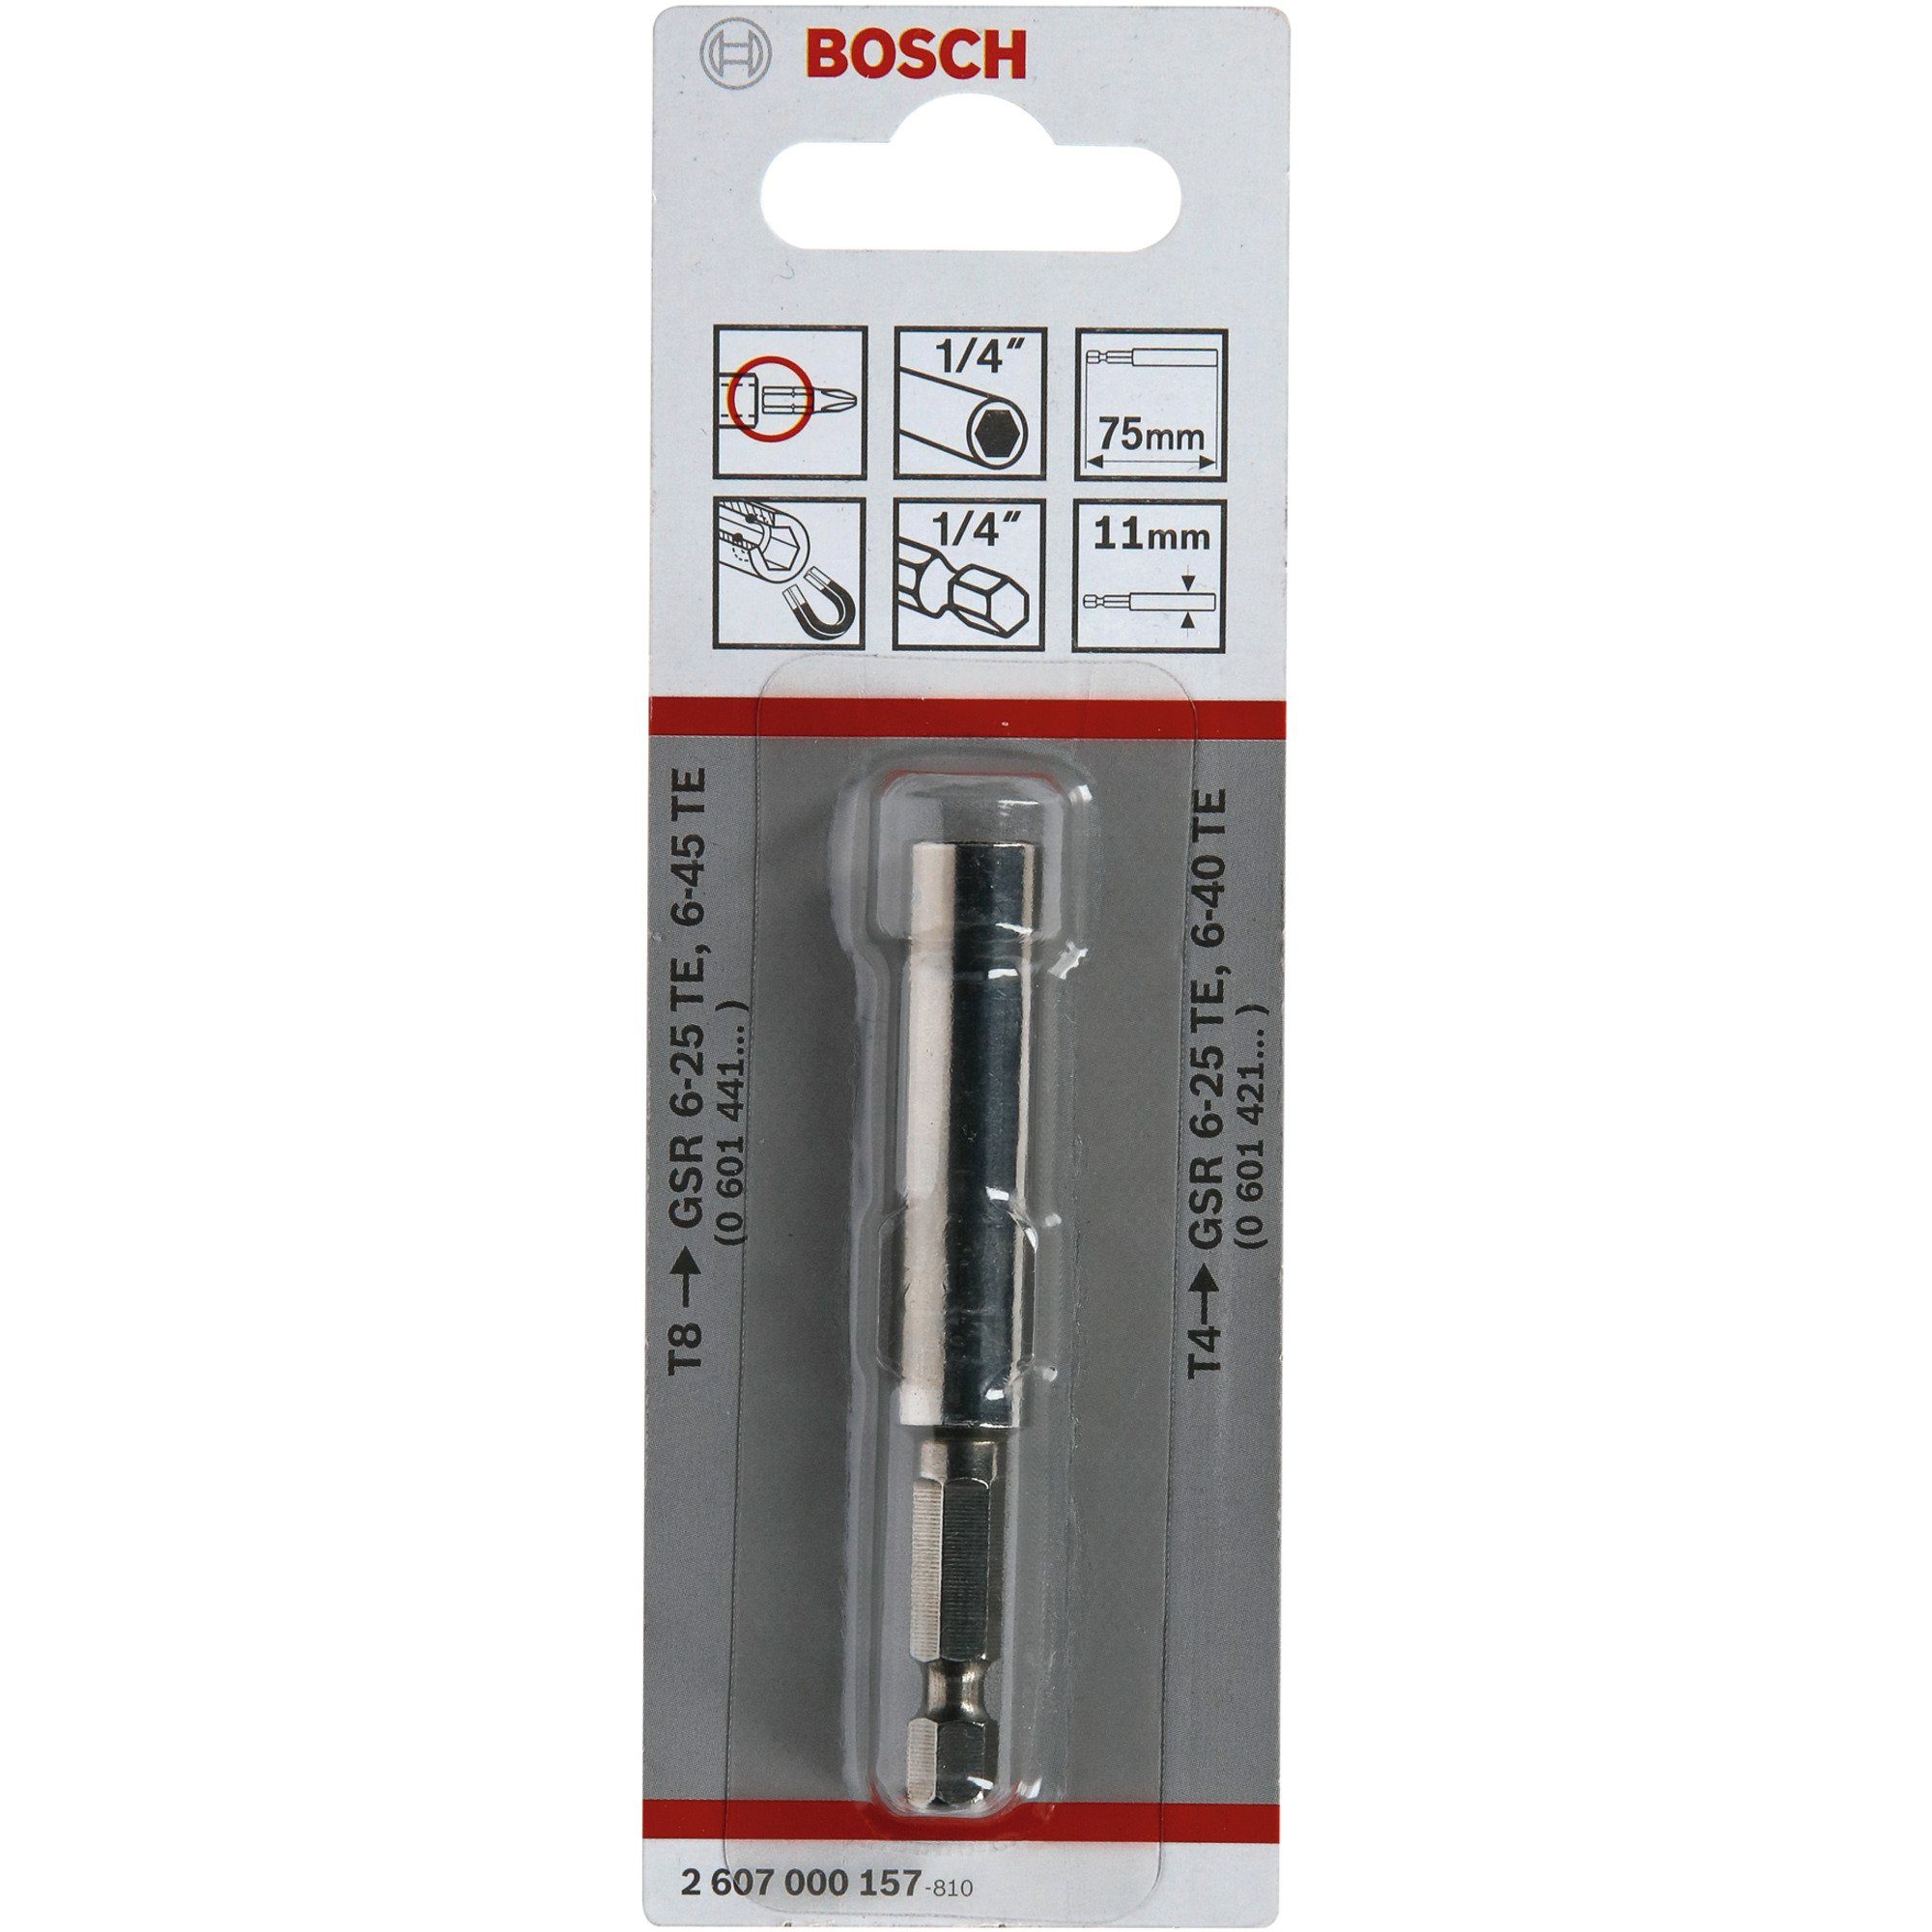 Bosch 1/4" BOSCH mit Multitool Universalhalter Professional